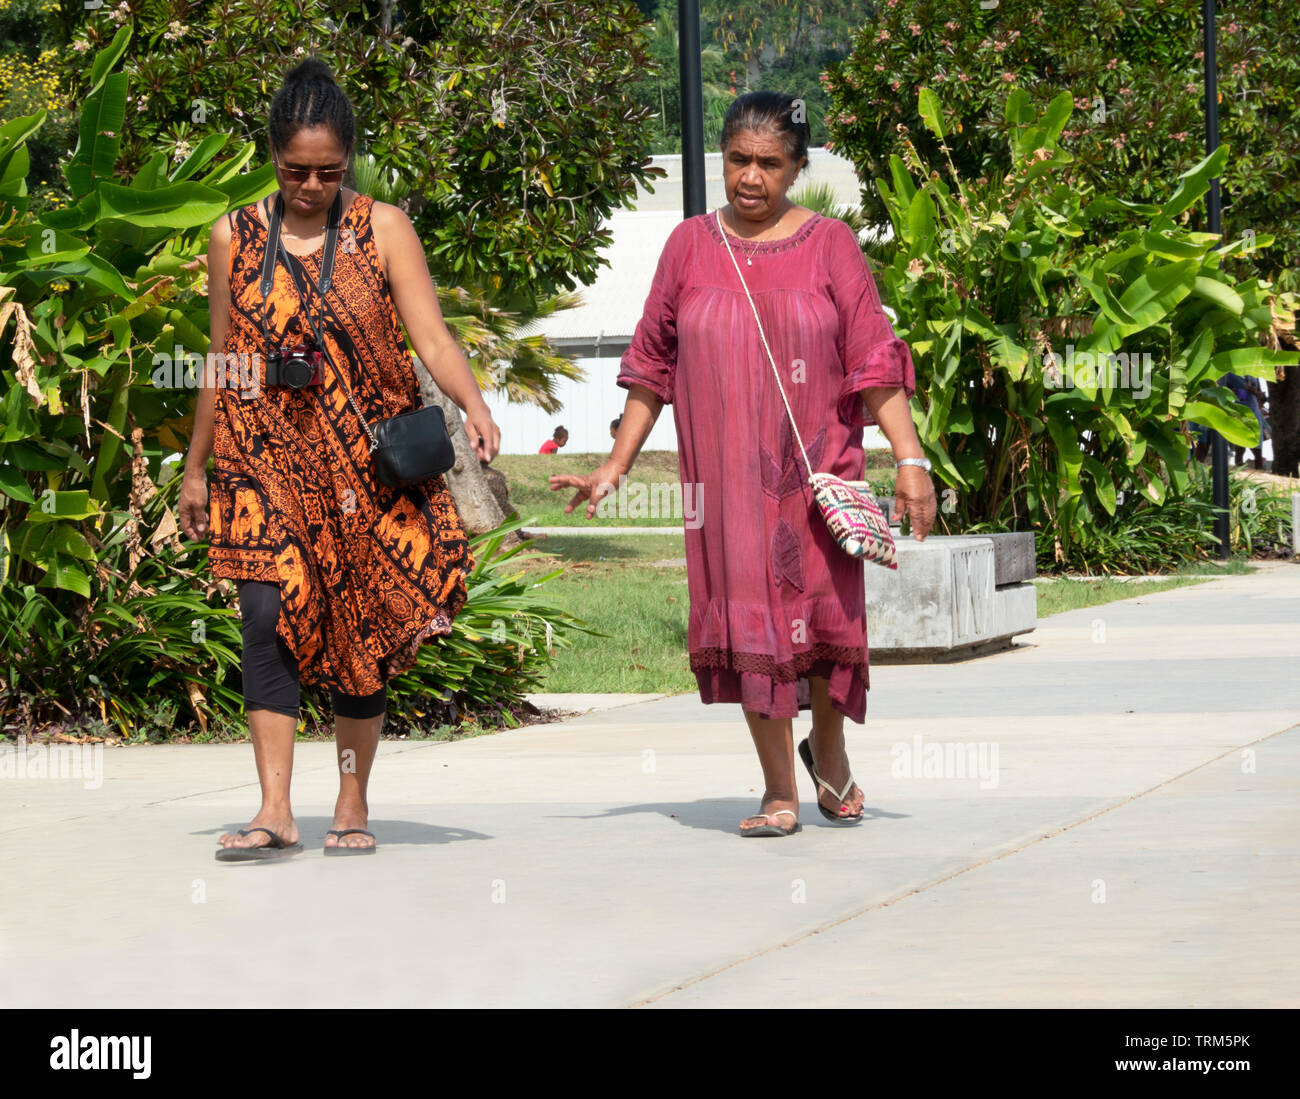 Candid portrait de deux femmes mélanésiennes balade dans un parc, Port Vila, l'île d'Efate, Vanuatu, Mélanésie Banque D'Images